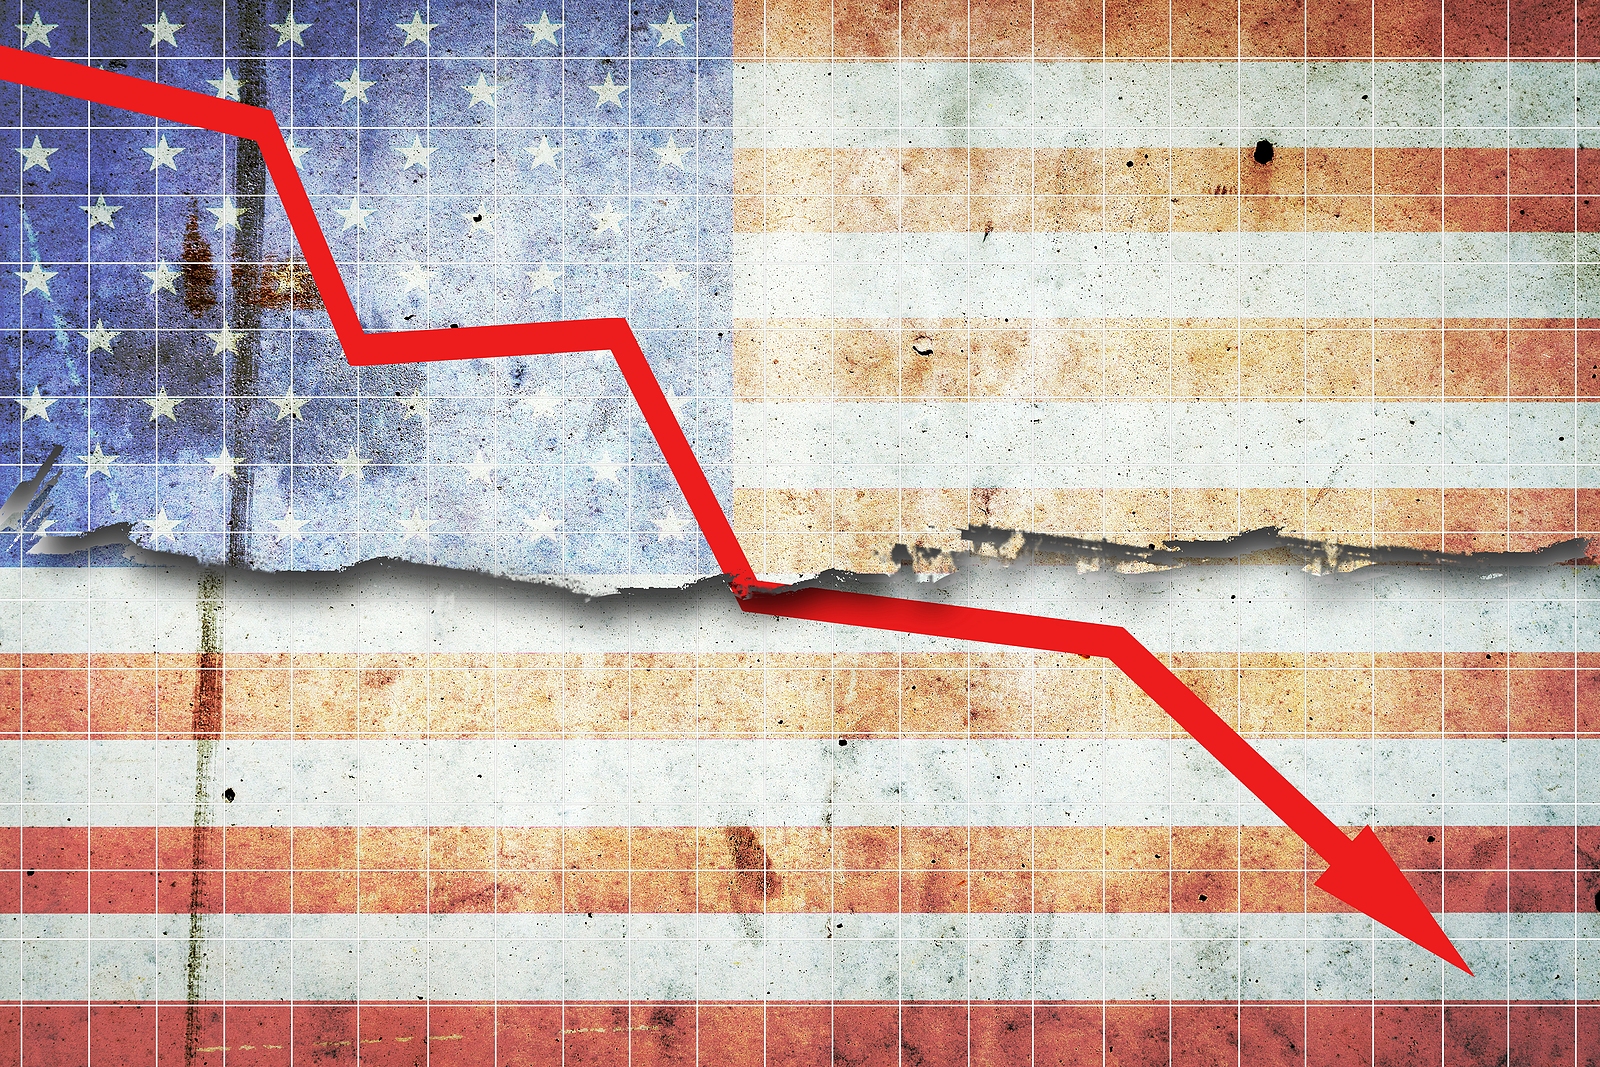 U.S. Economy Recovering